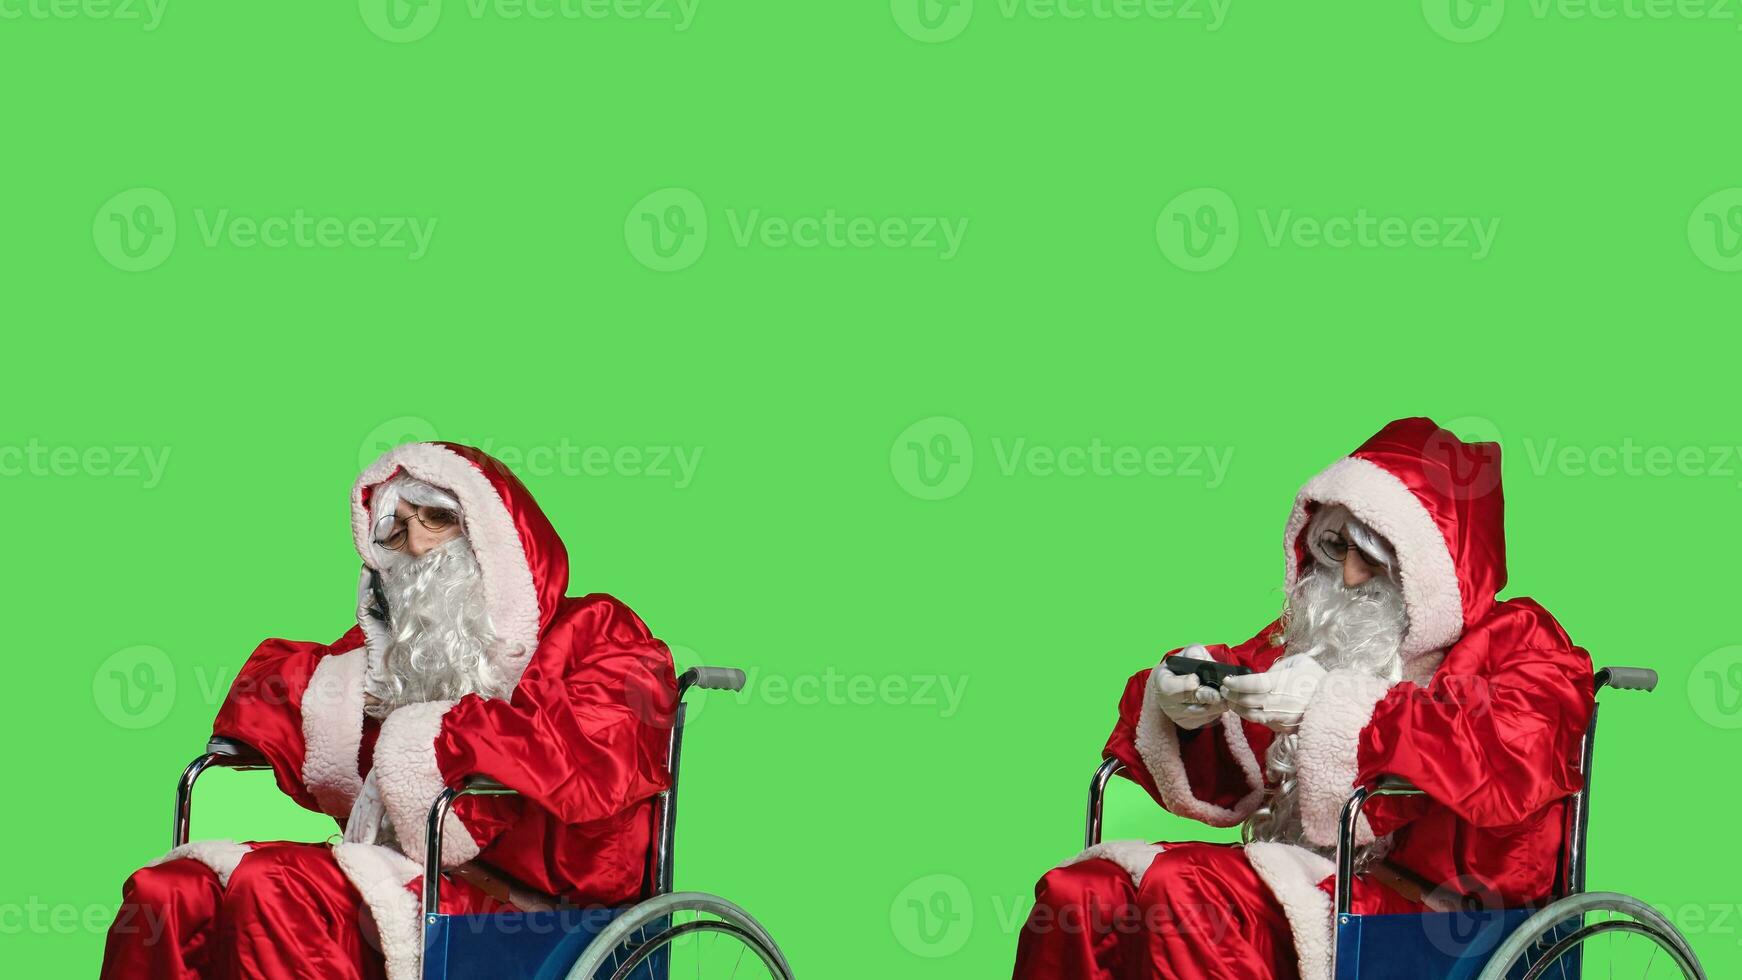 hombre Papa Noel claus utilizando teléfono inteligente, jugando videojuegos y hablando en teléfono llamada en estudio. persona retratar padre Navidad en silla de ruedas con discapacidad, teniendo divertido juego de azar y charlando foto